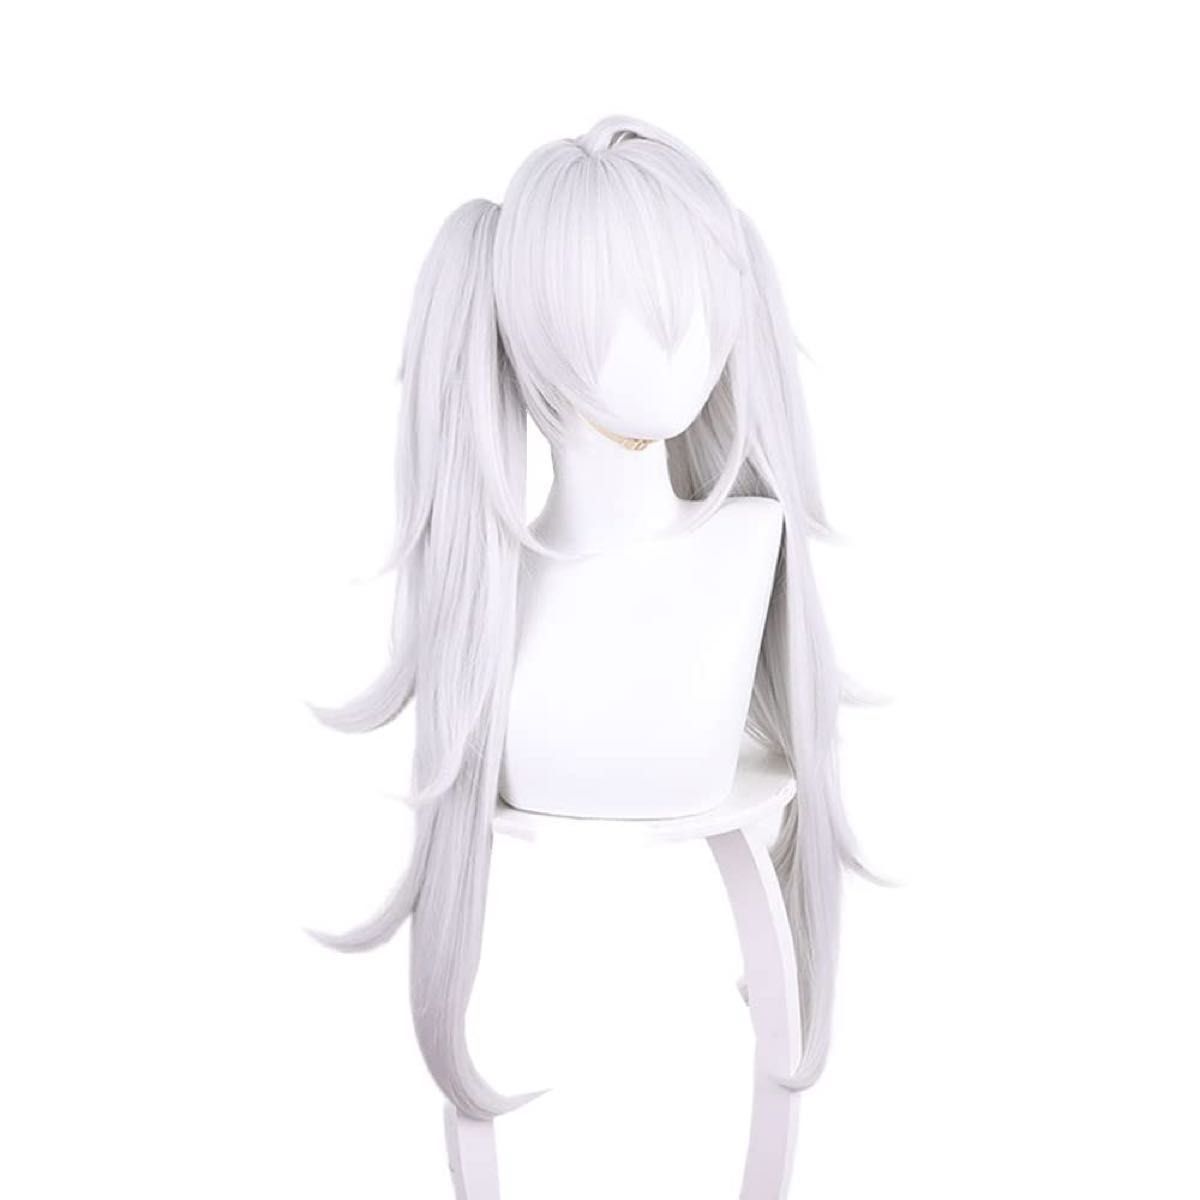 コスプレウィッグ 葛葉 女版 ホワイト シルバー 耐熱 ウィッグ かつら wig cosplay 撮影 バンス付き ツインテール